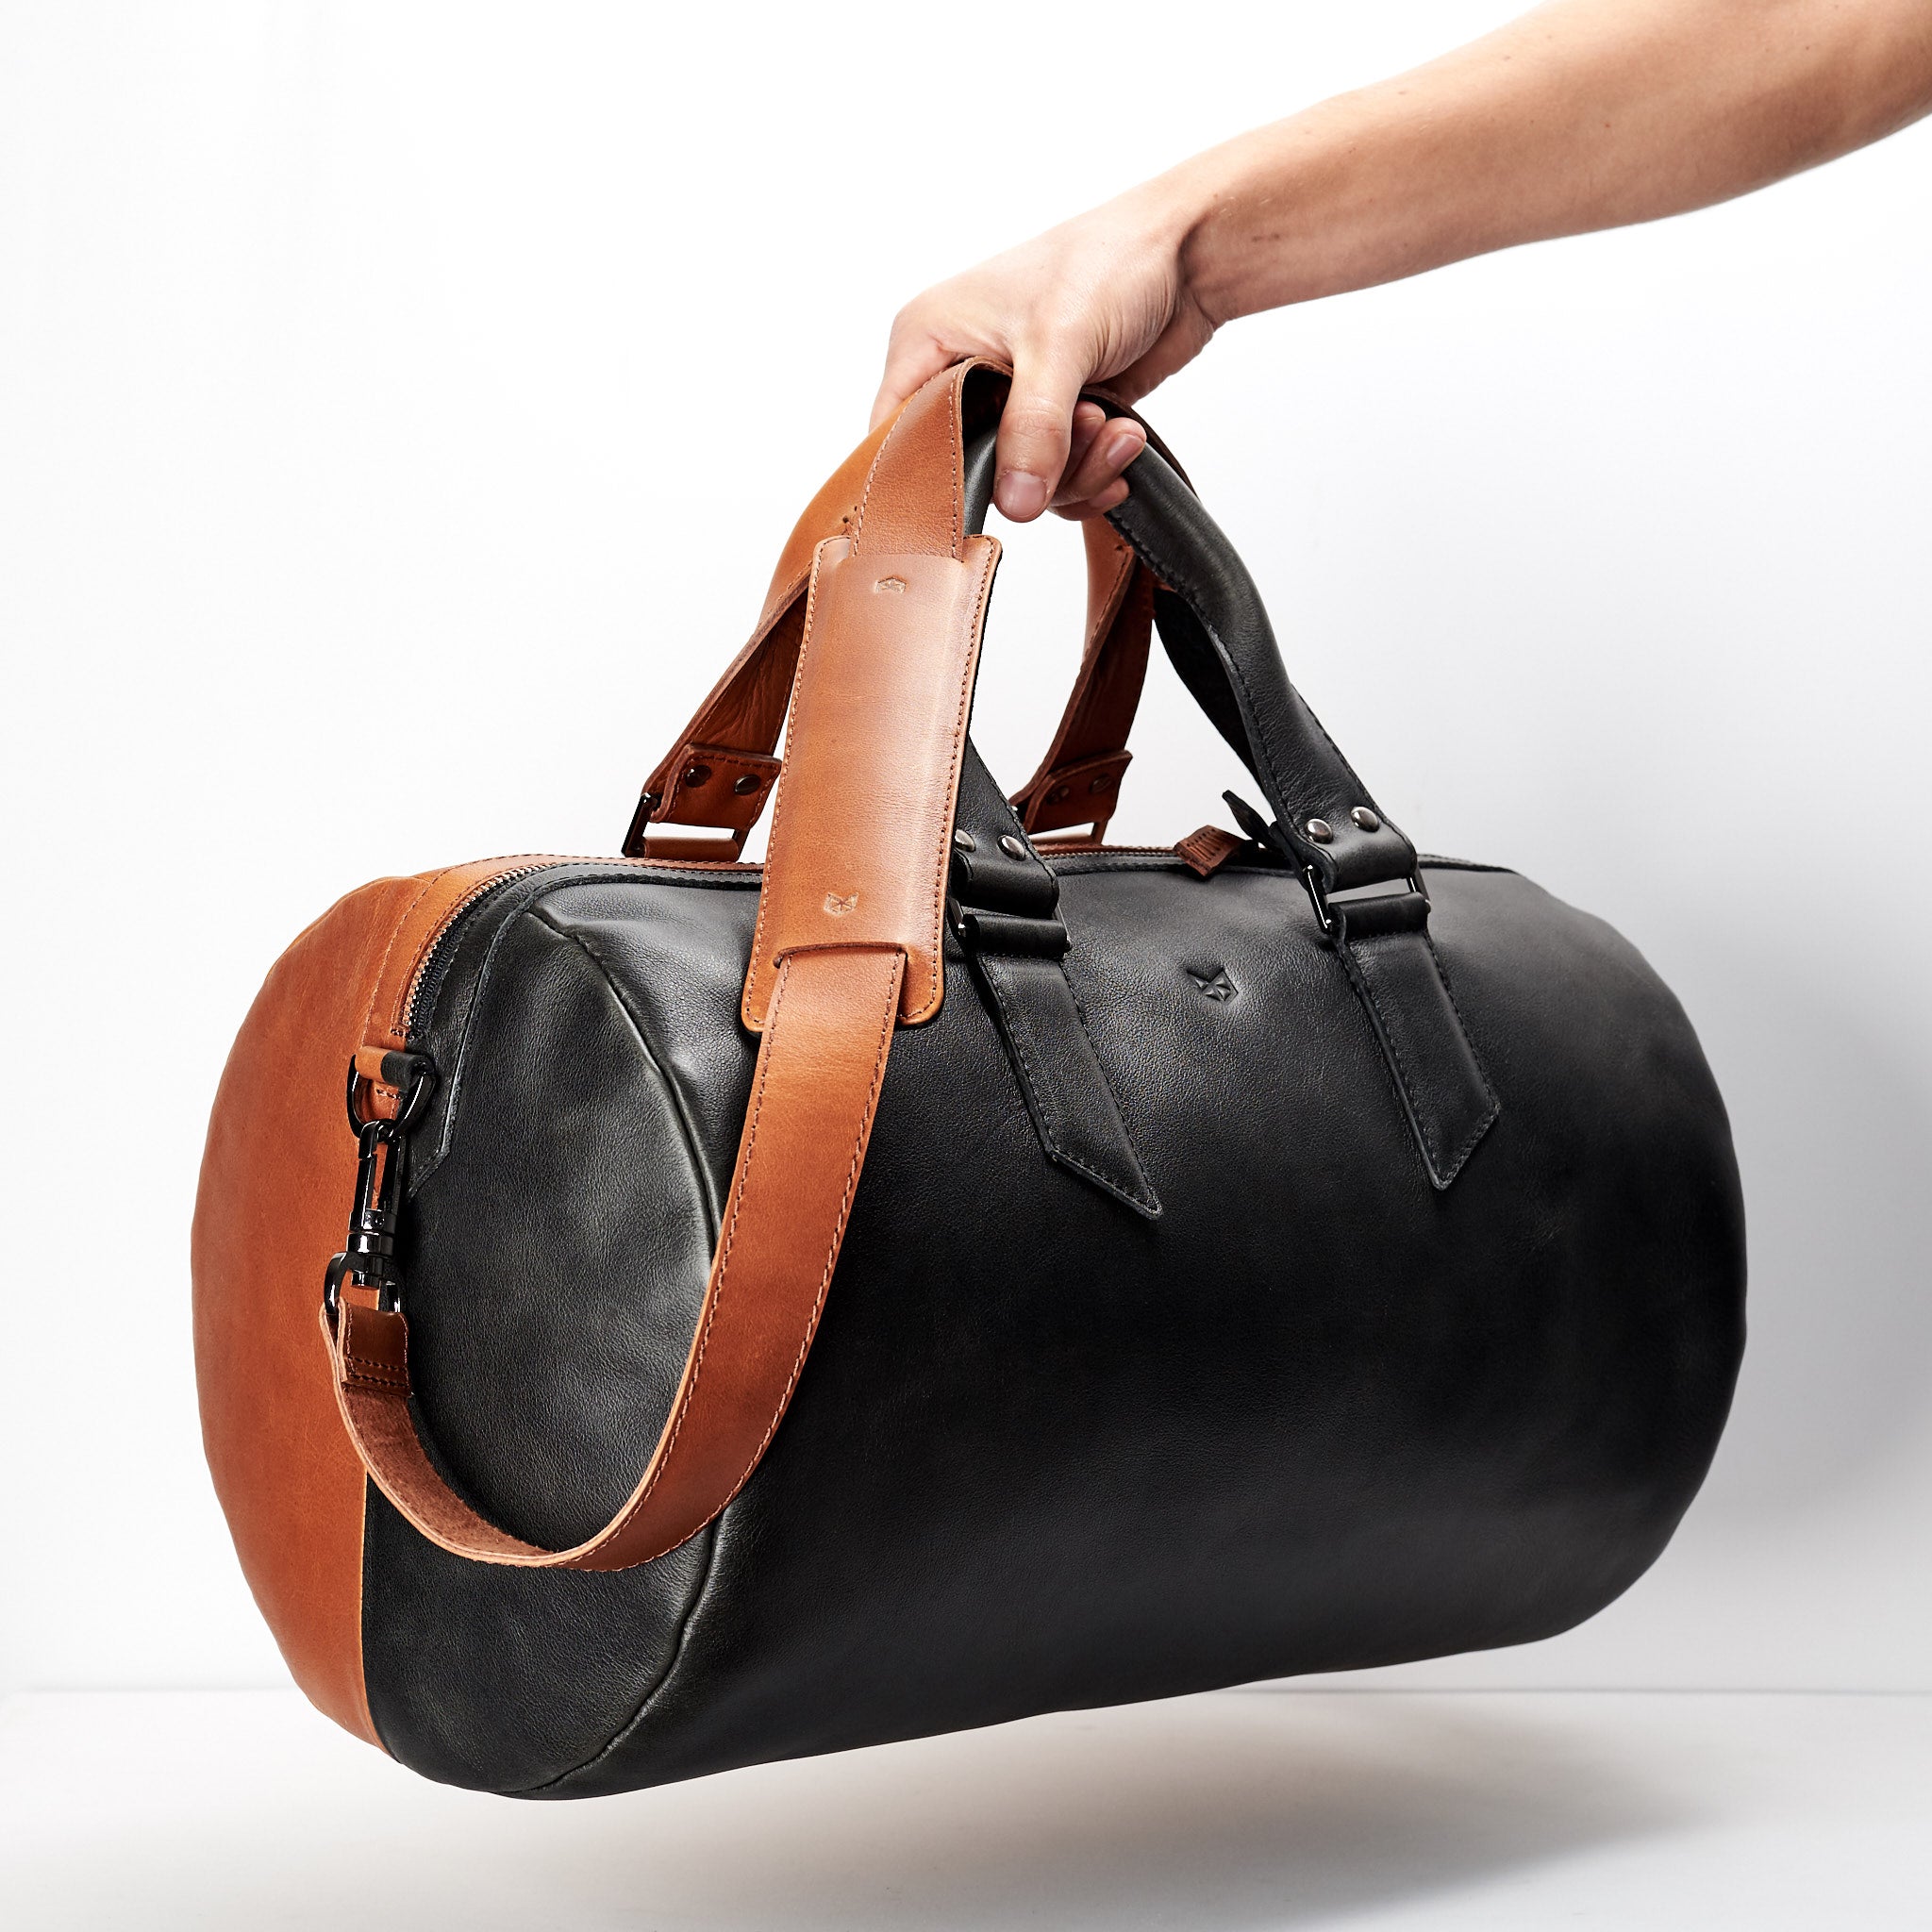 luxury leather duffle bag